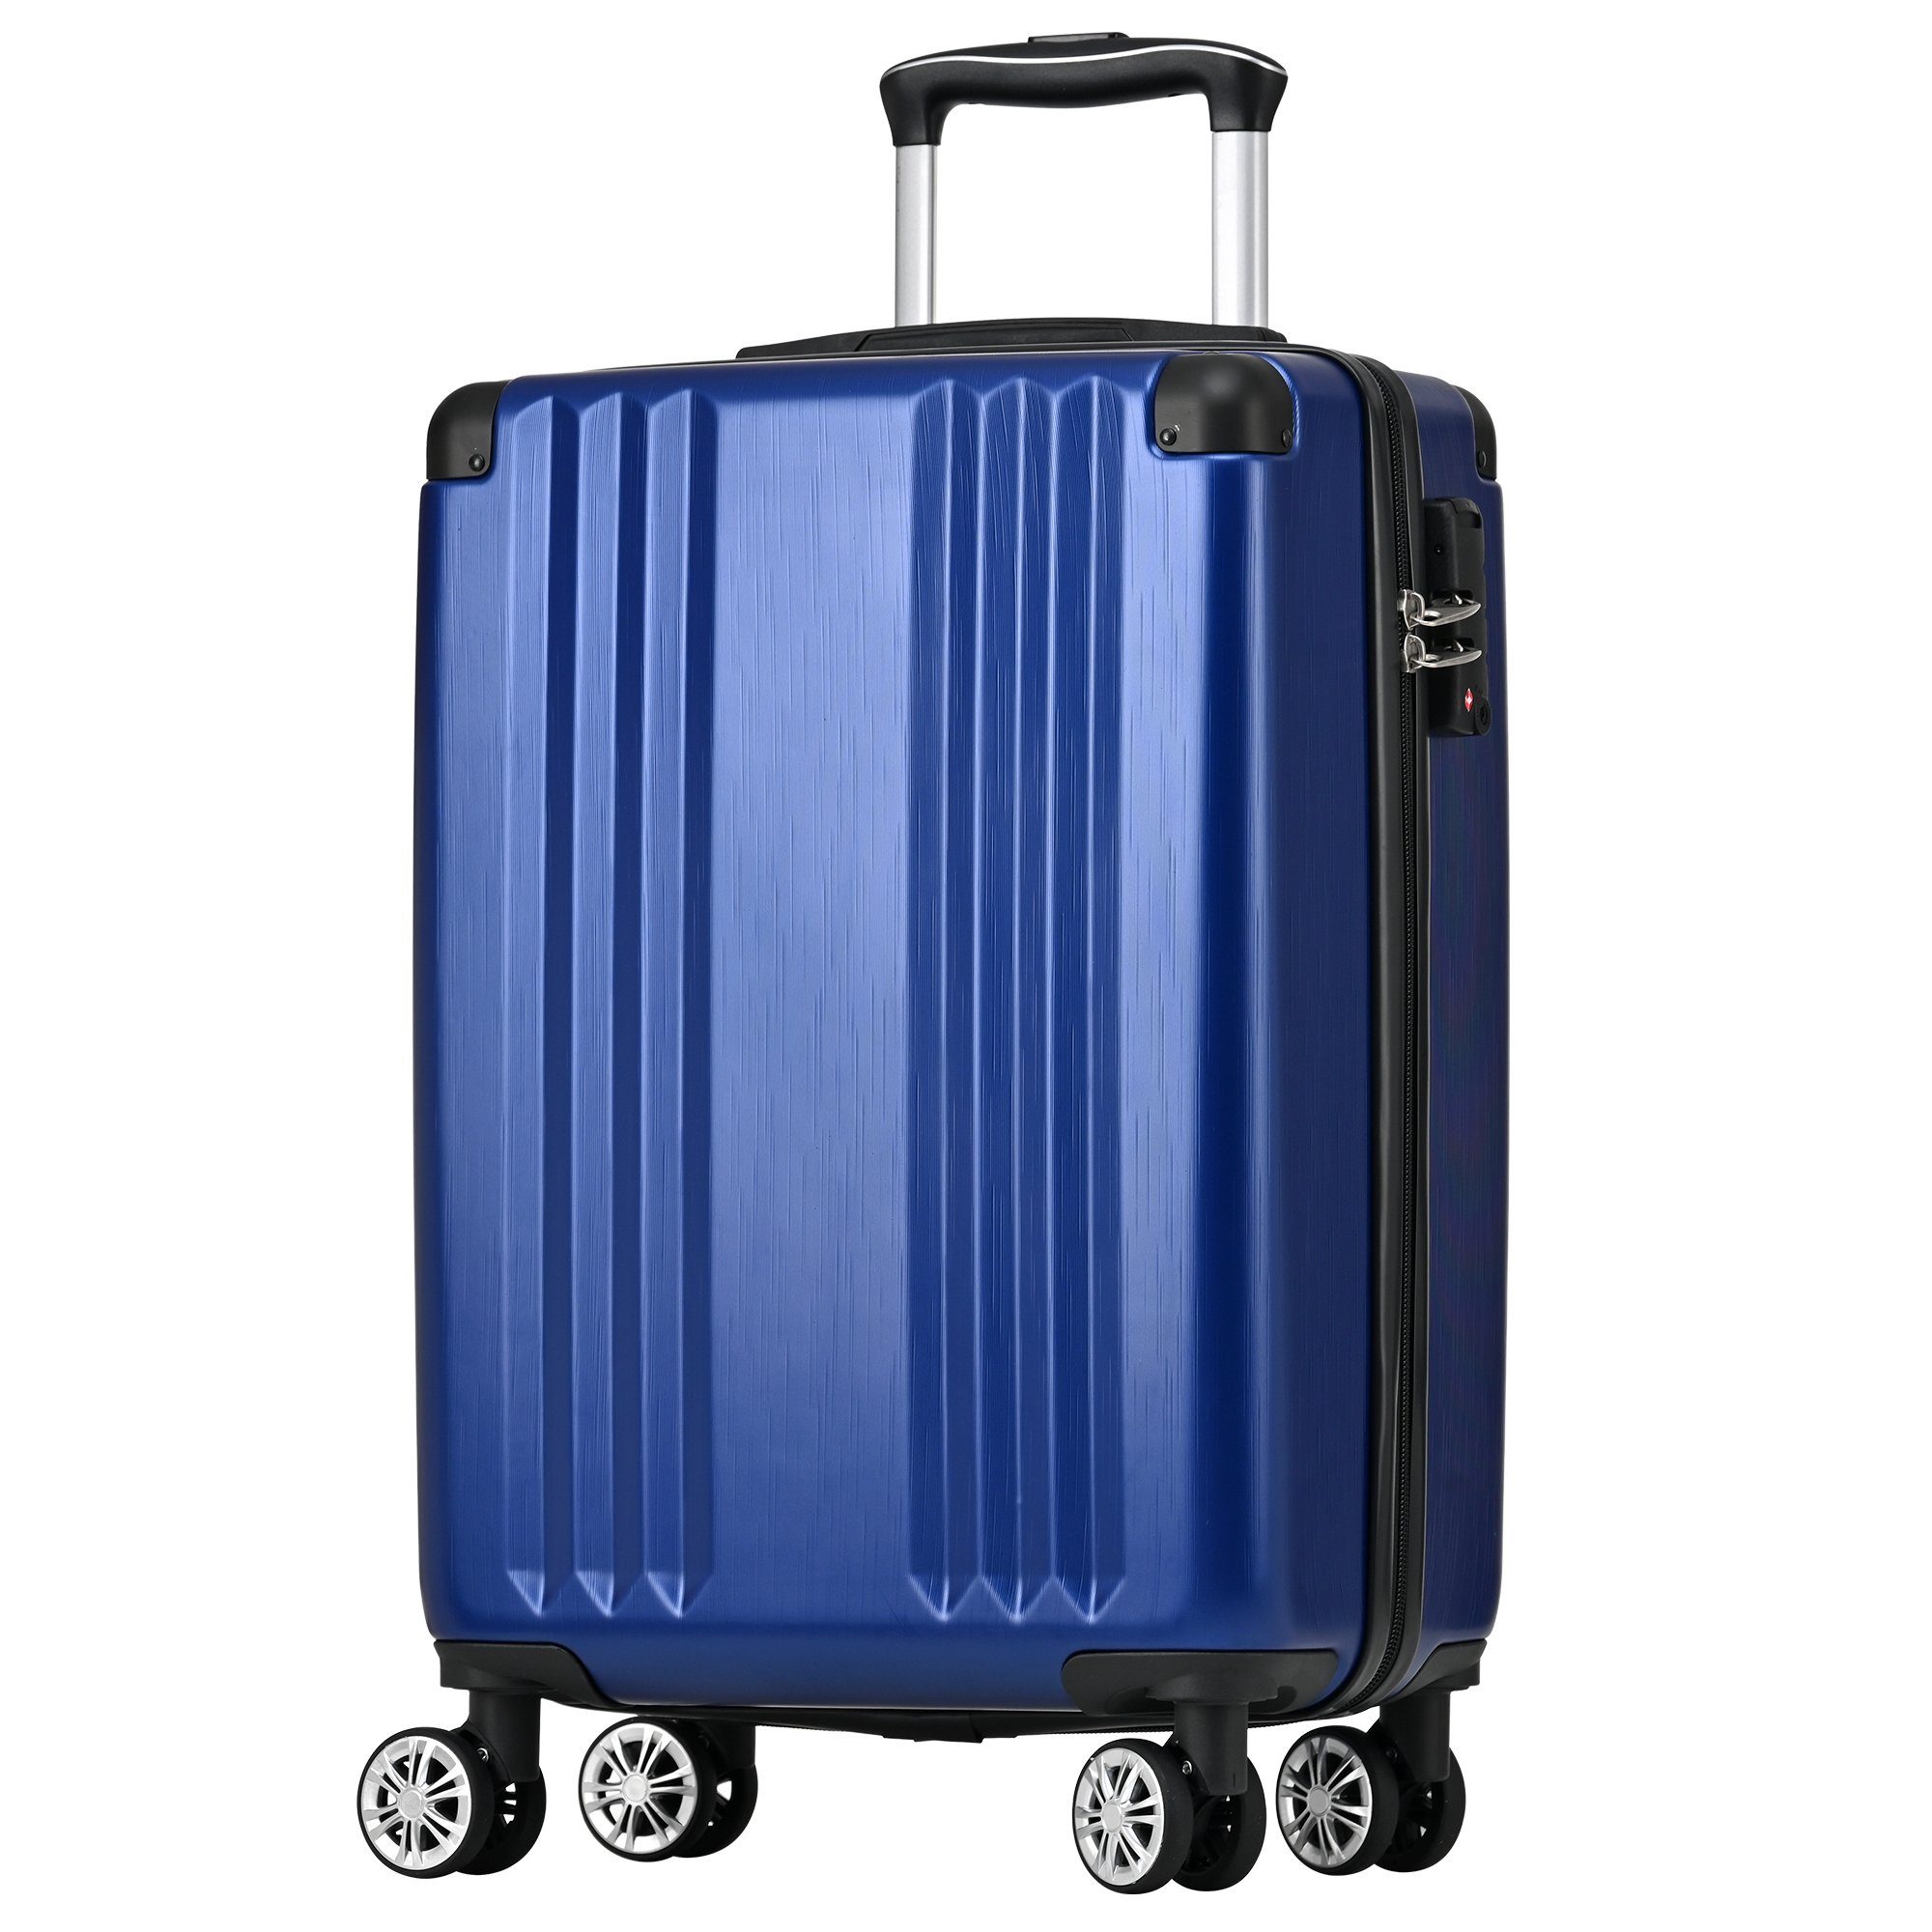 Ulife Handgepäck-Trolley Reisekoffer ABS-Material, TSA Zollschloss, 4 Rollen, M-Größe:56.5*37.5*22.5 Blau